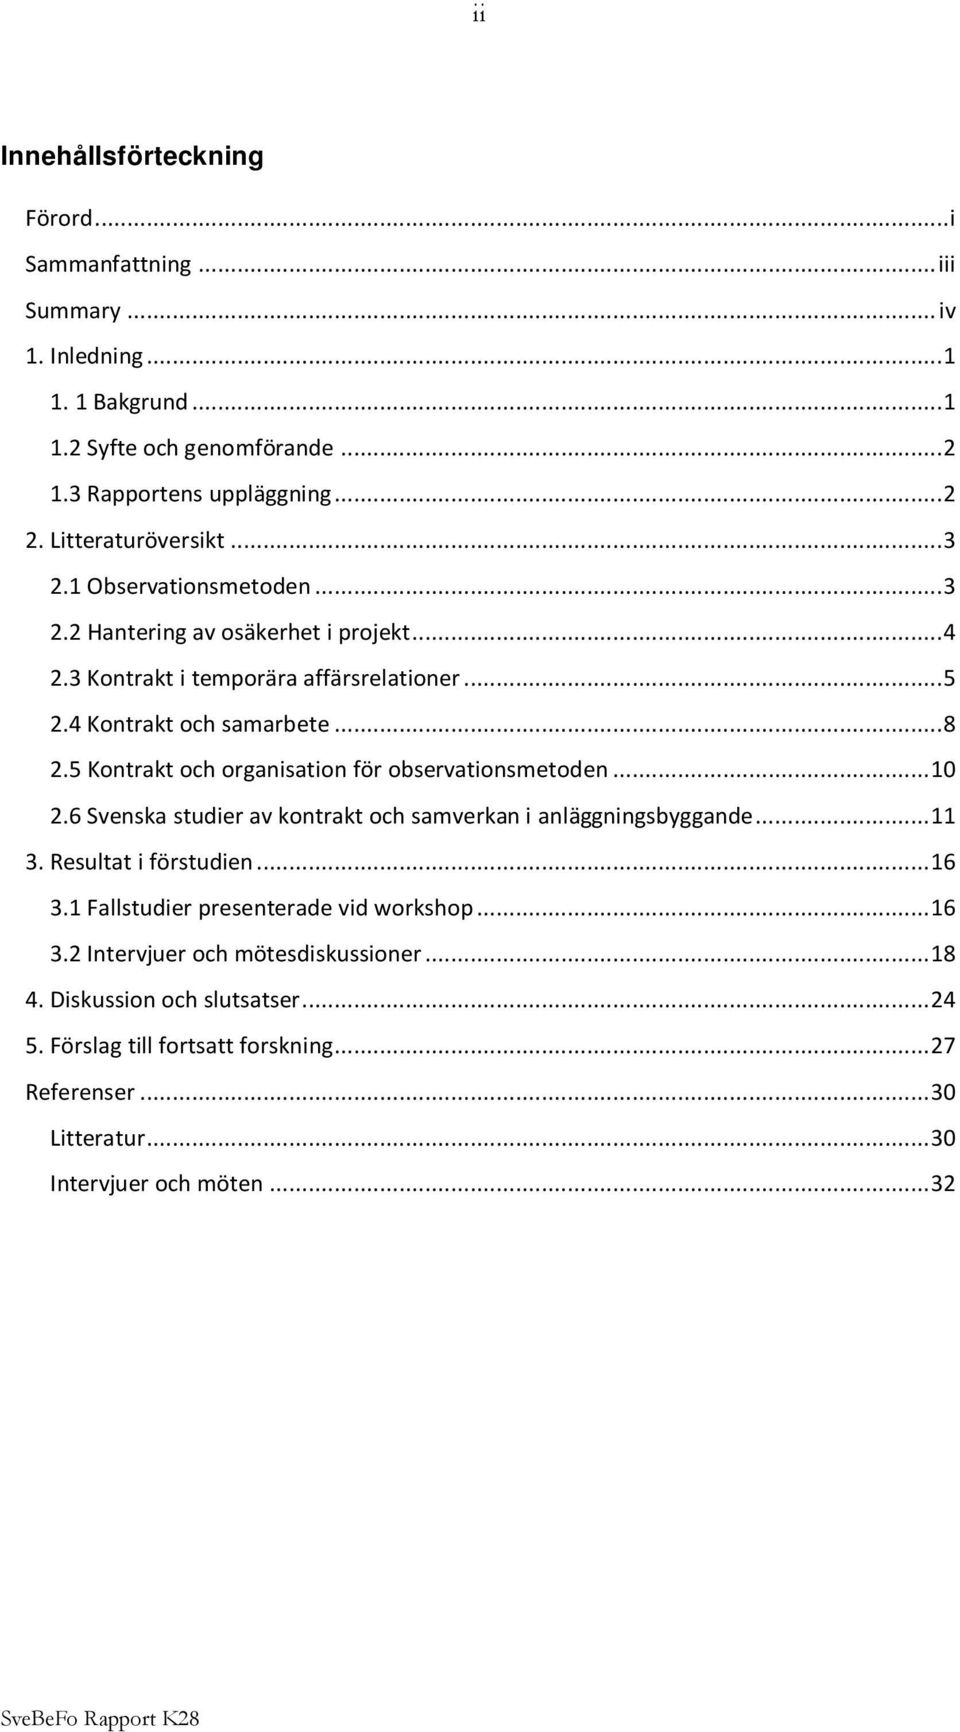 5 Kontrakt och organisation för observationsmetoden...10 2.6 Svenska studier av kontrakt och samverkan i anläggningsbyggande...11 3. Resultat i förstudien...16 3.